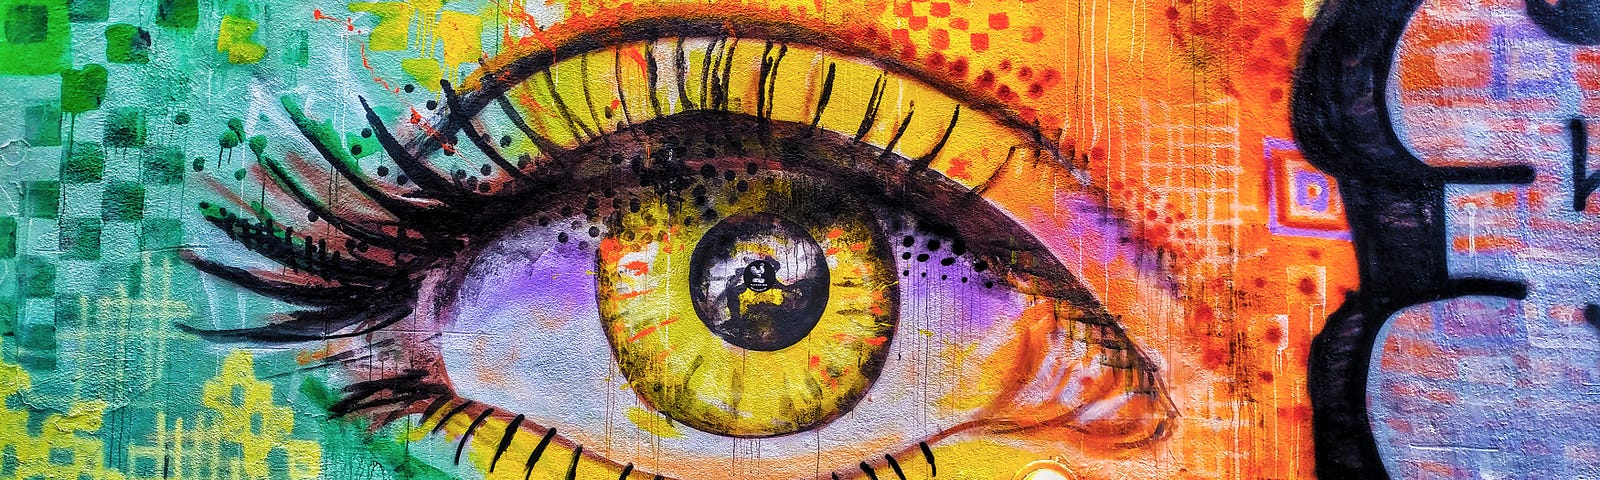 Street art of an eye